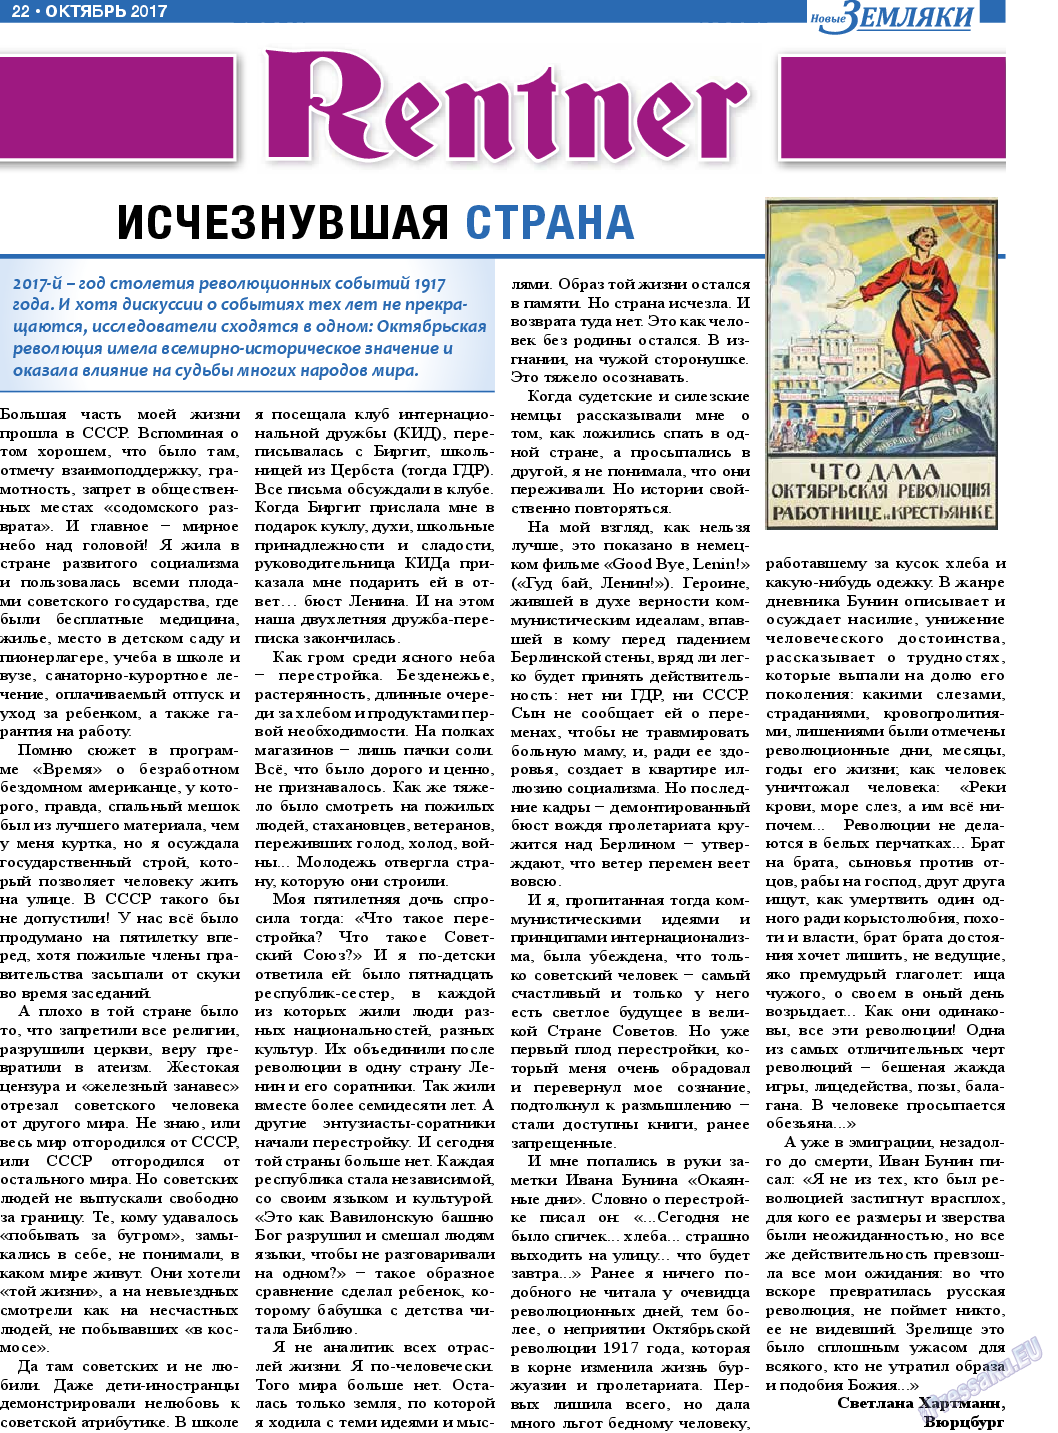 Новые Земляки, газета. 2017 №10 стр.22